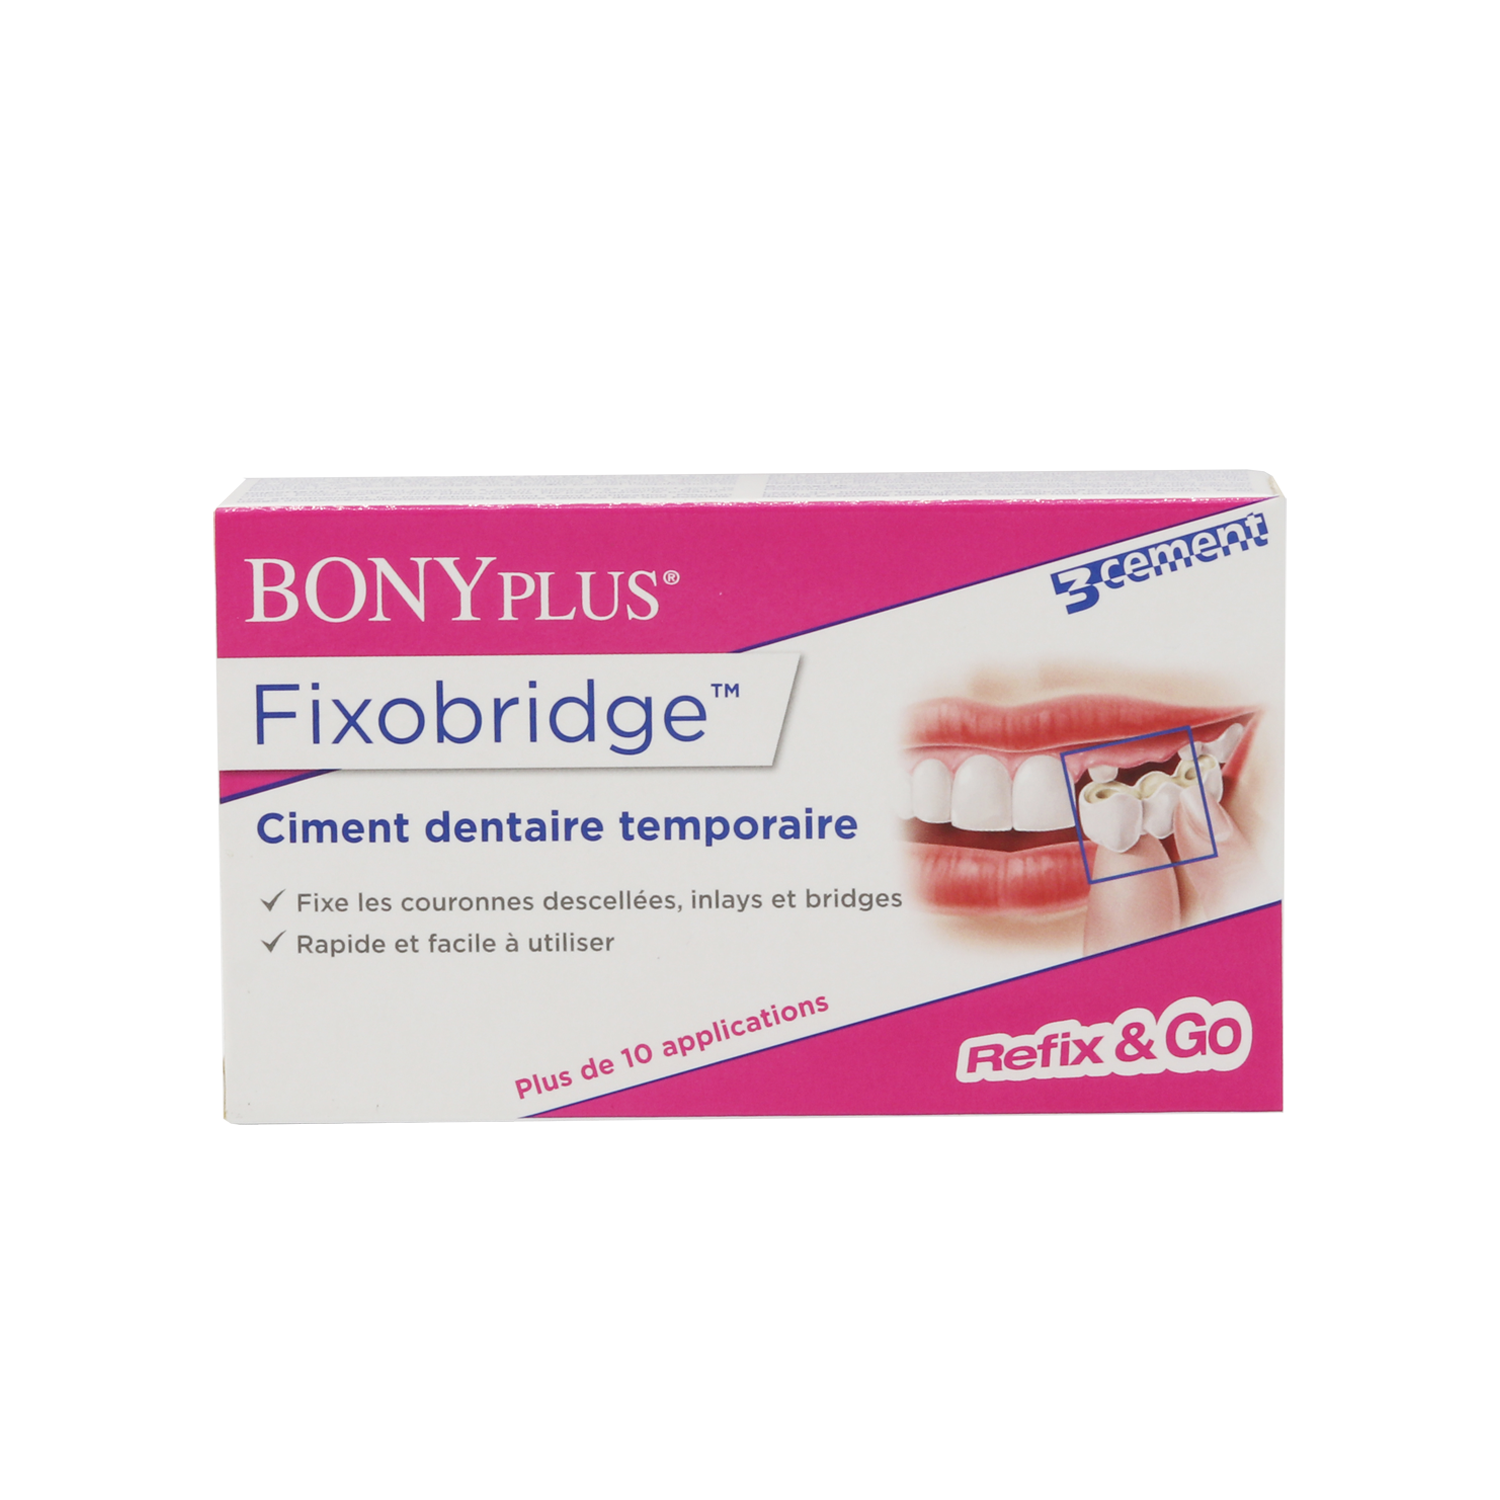 BONYPLUS Fixobridge Repairs crowns, inlays and bridges